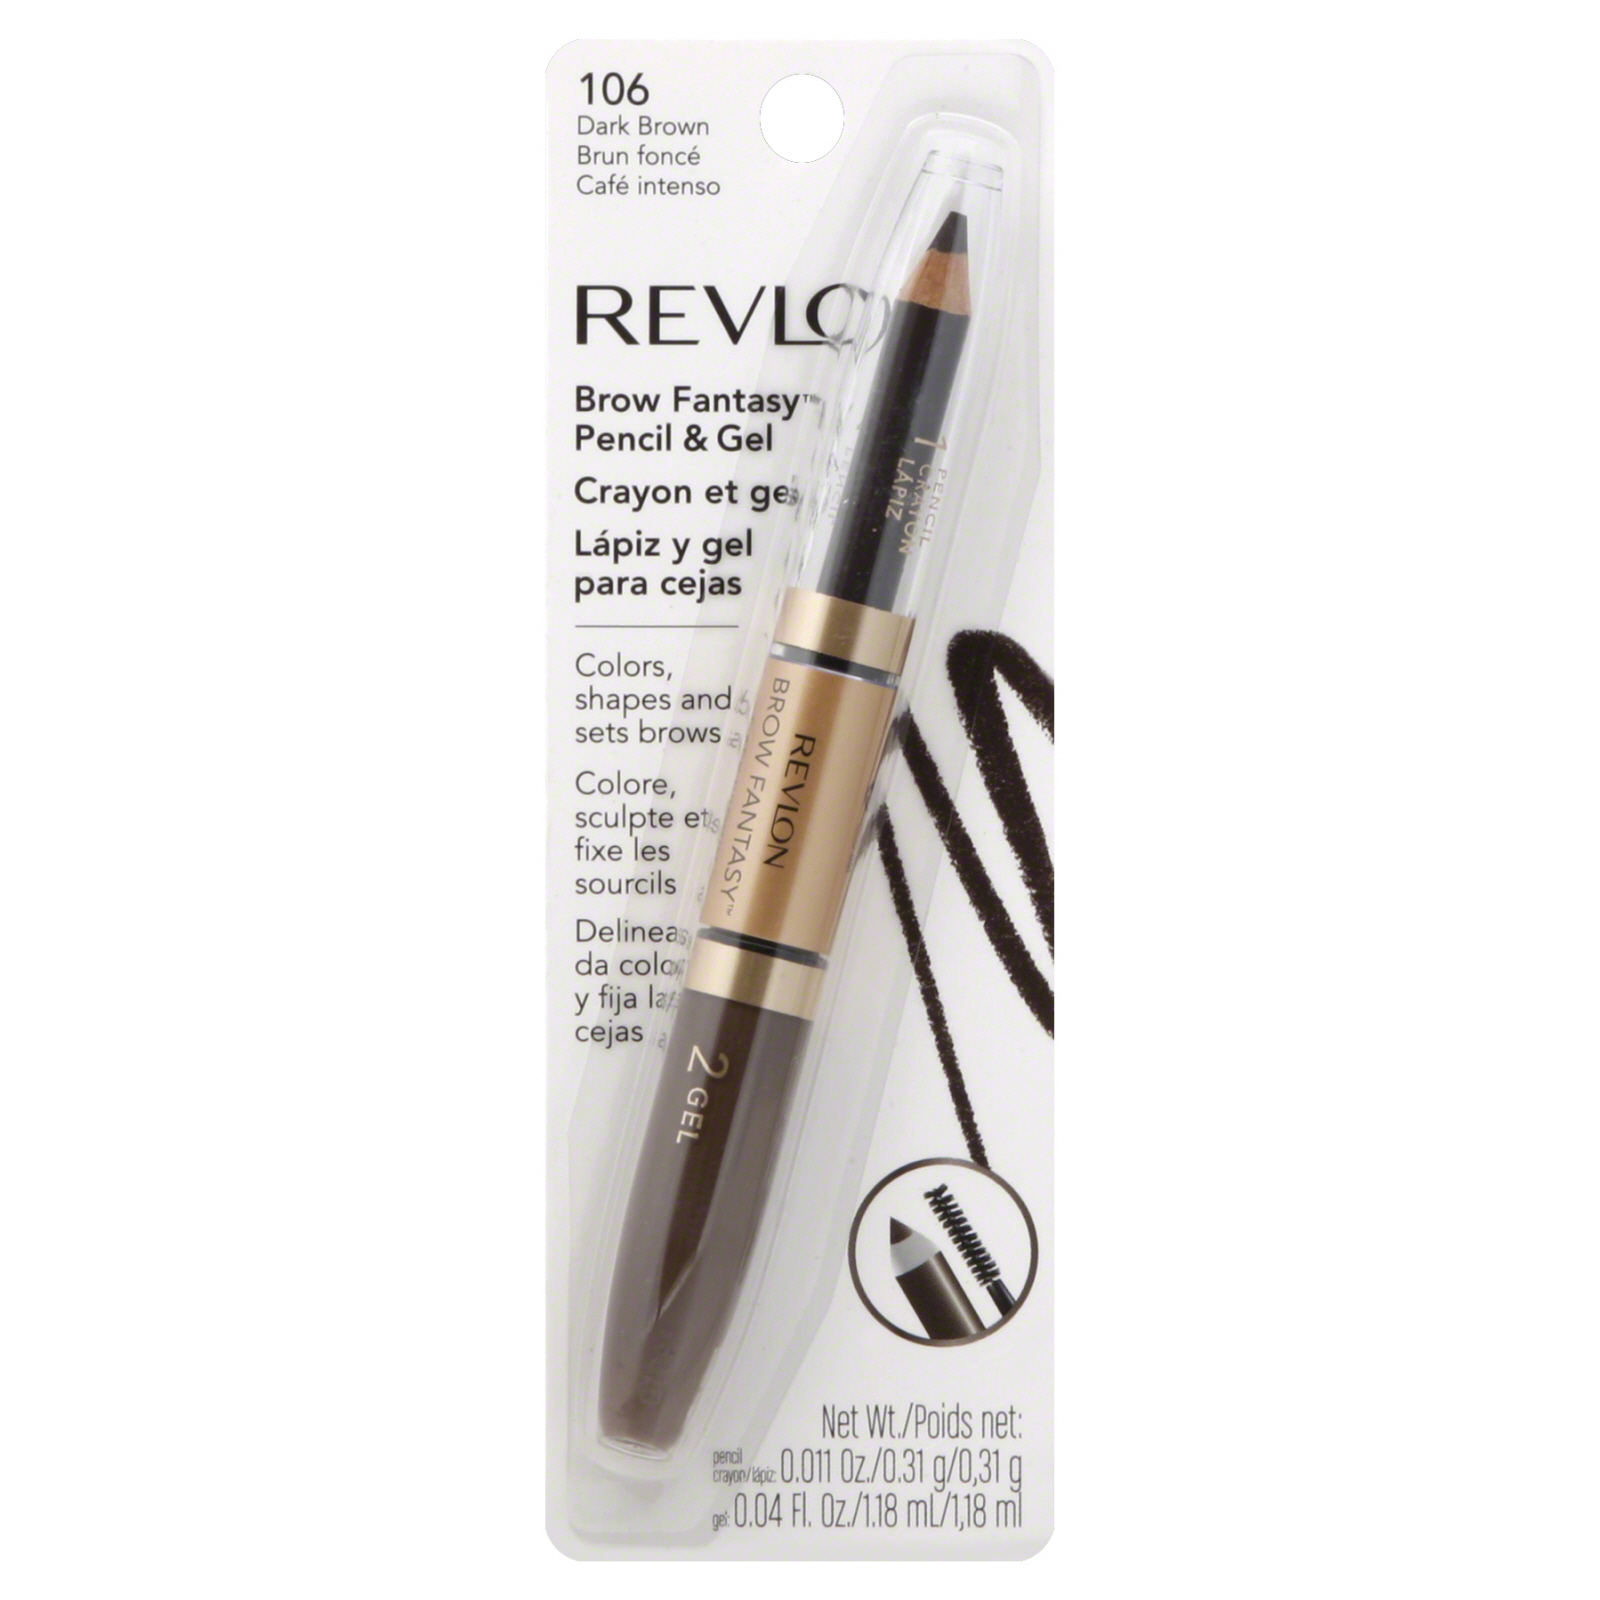 Revlon Brow Fantasy Pencil & Gel, Dark Brown